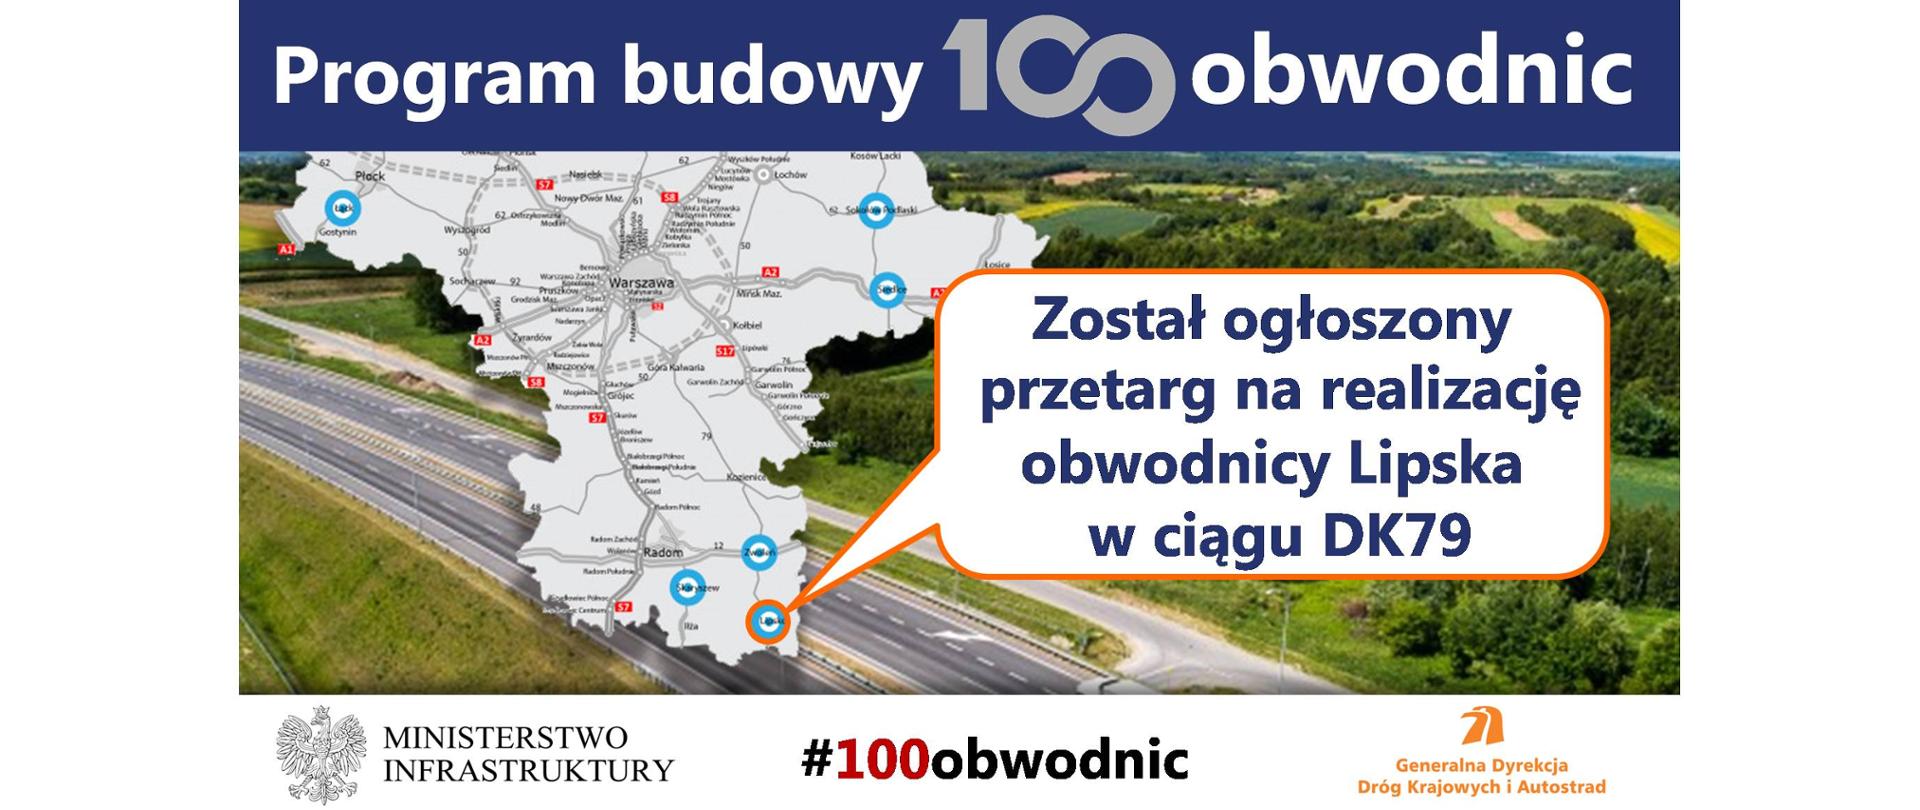 Infografika informuje, że został ogłoszony przetarg na realizację obwodnicy Lipska w ramach Programu budowy 100 obwodnic